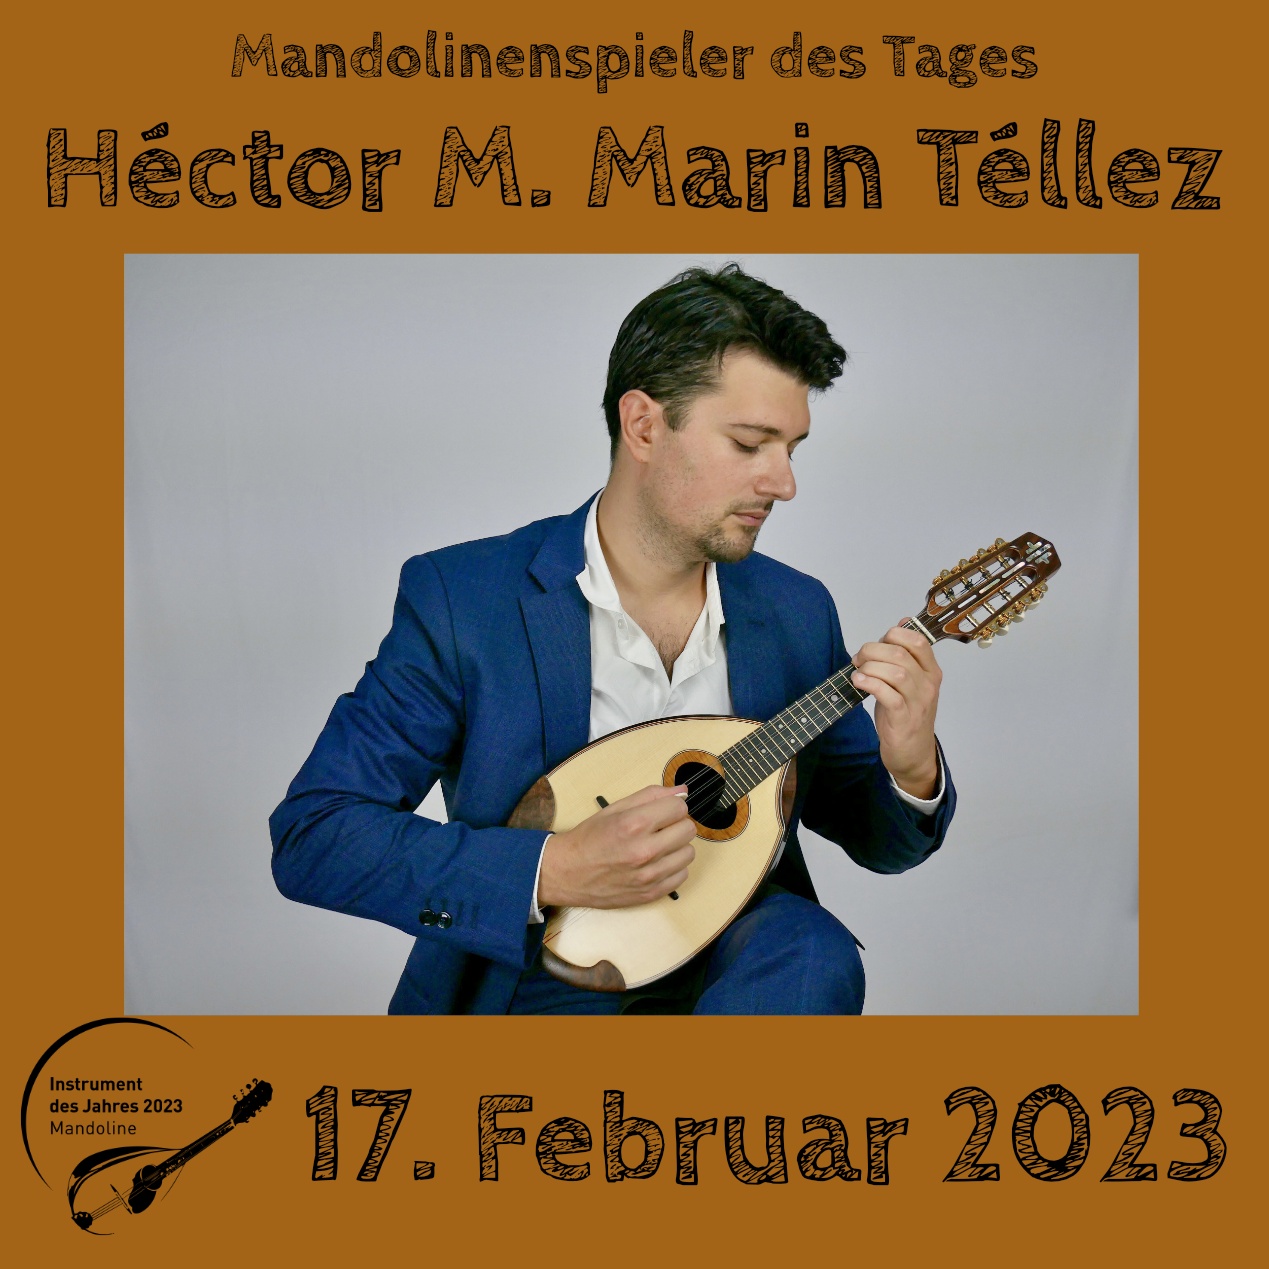 Héctor M. Marin Téllez Mandoline Instrument des Jahres 2023 Mandolinenspieler des Tages